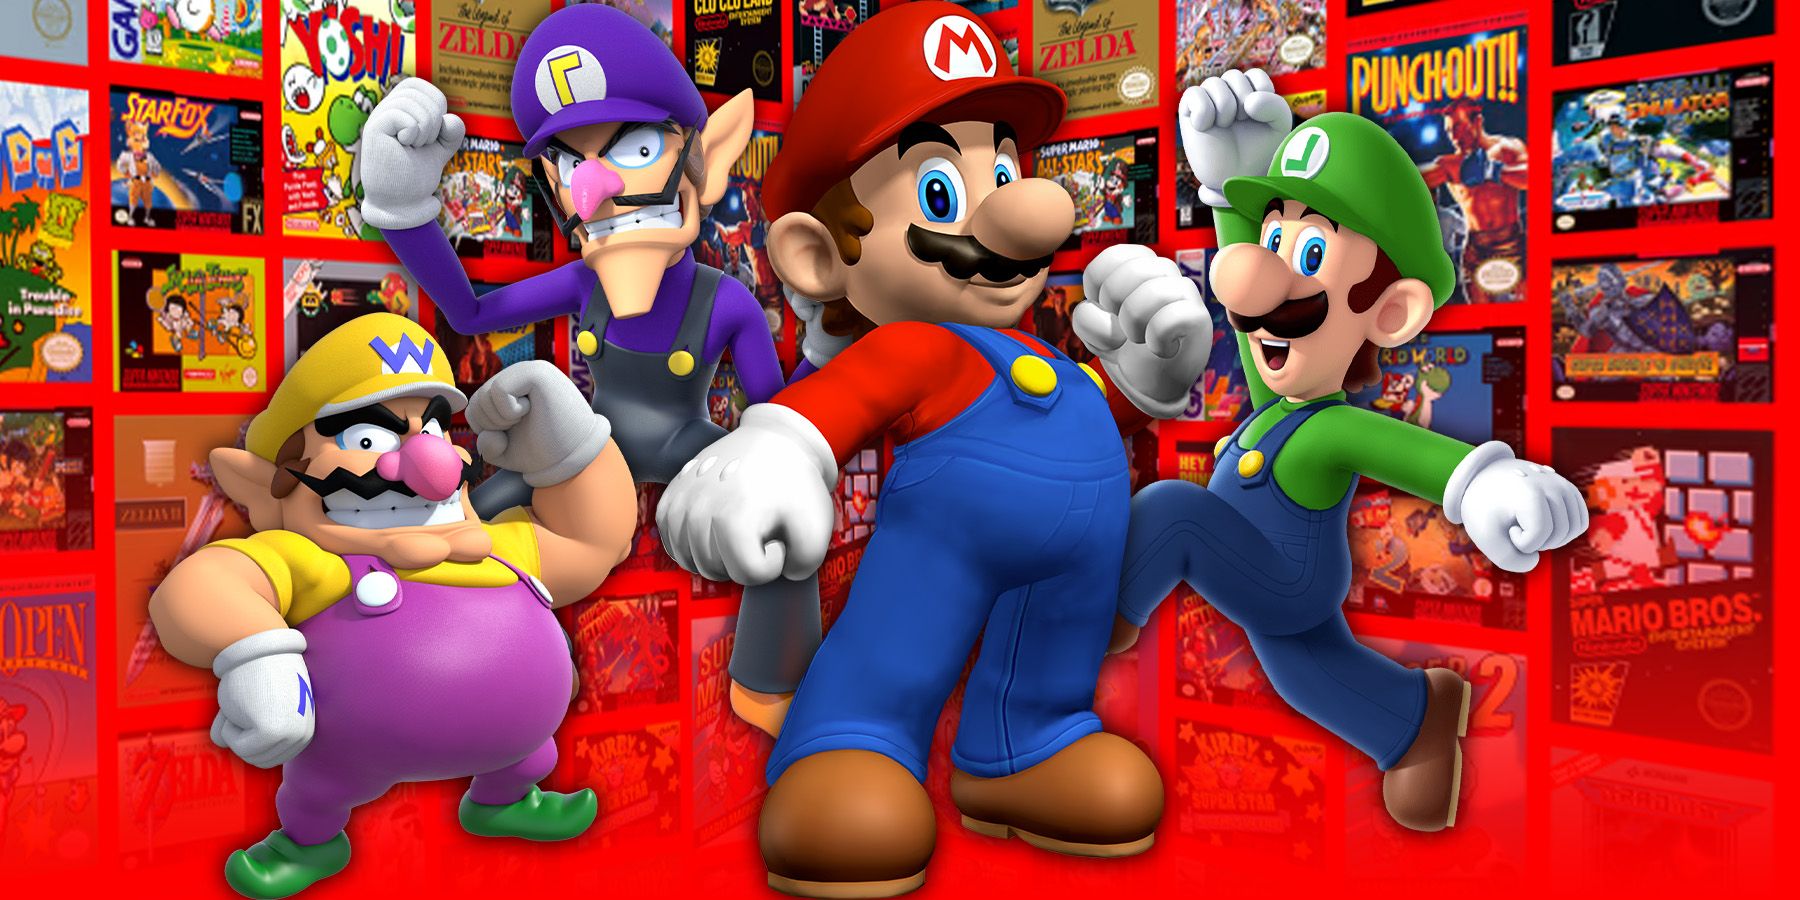 Wario Waluigi Mario and Luigi in front of Nintendo Games